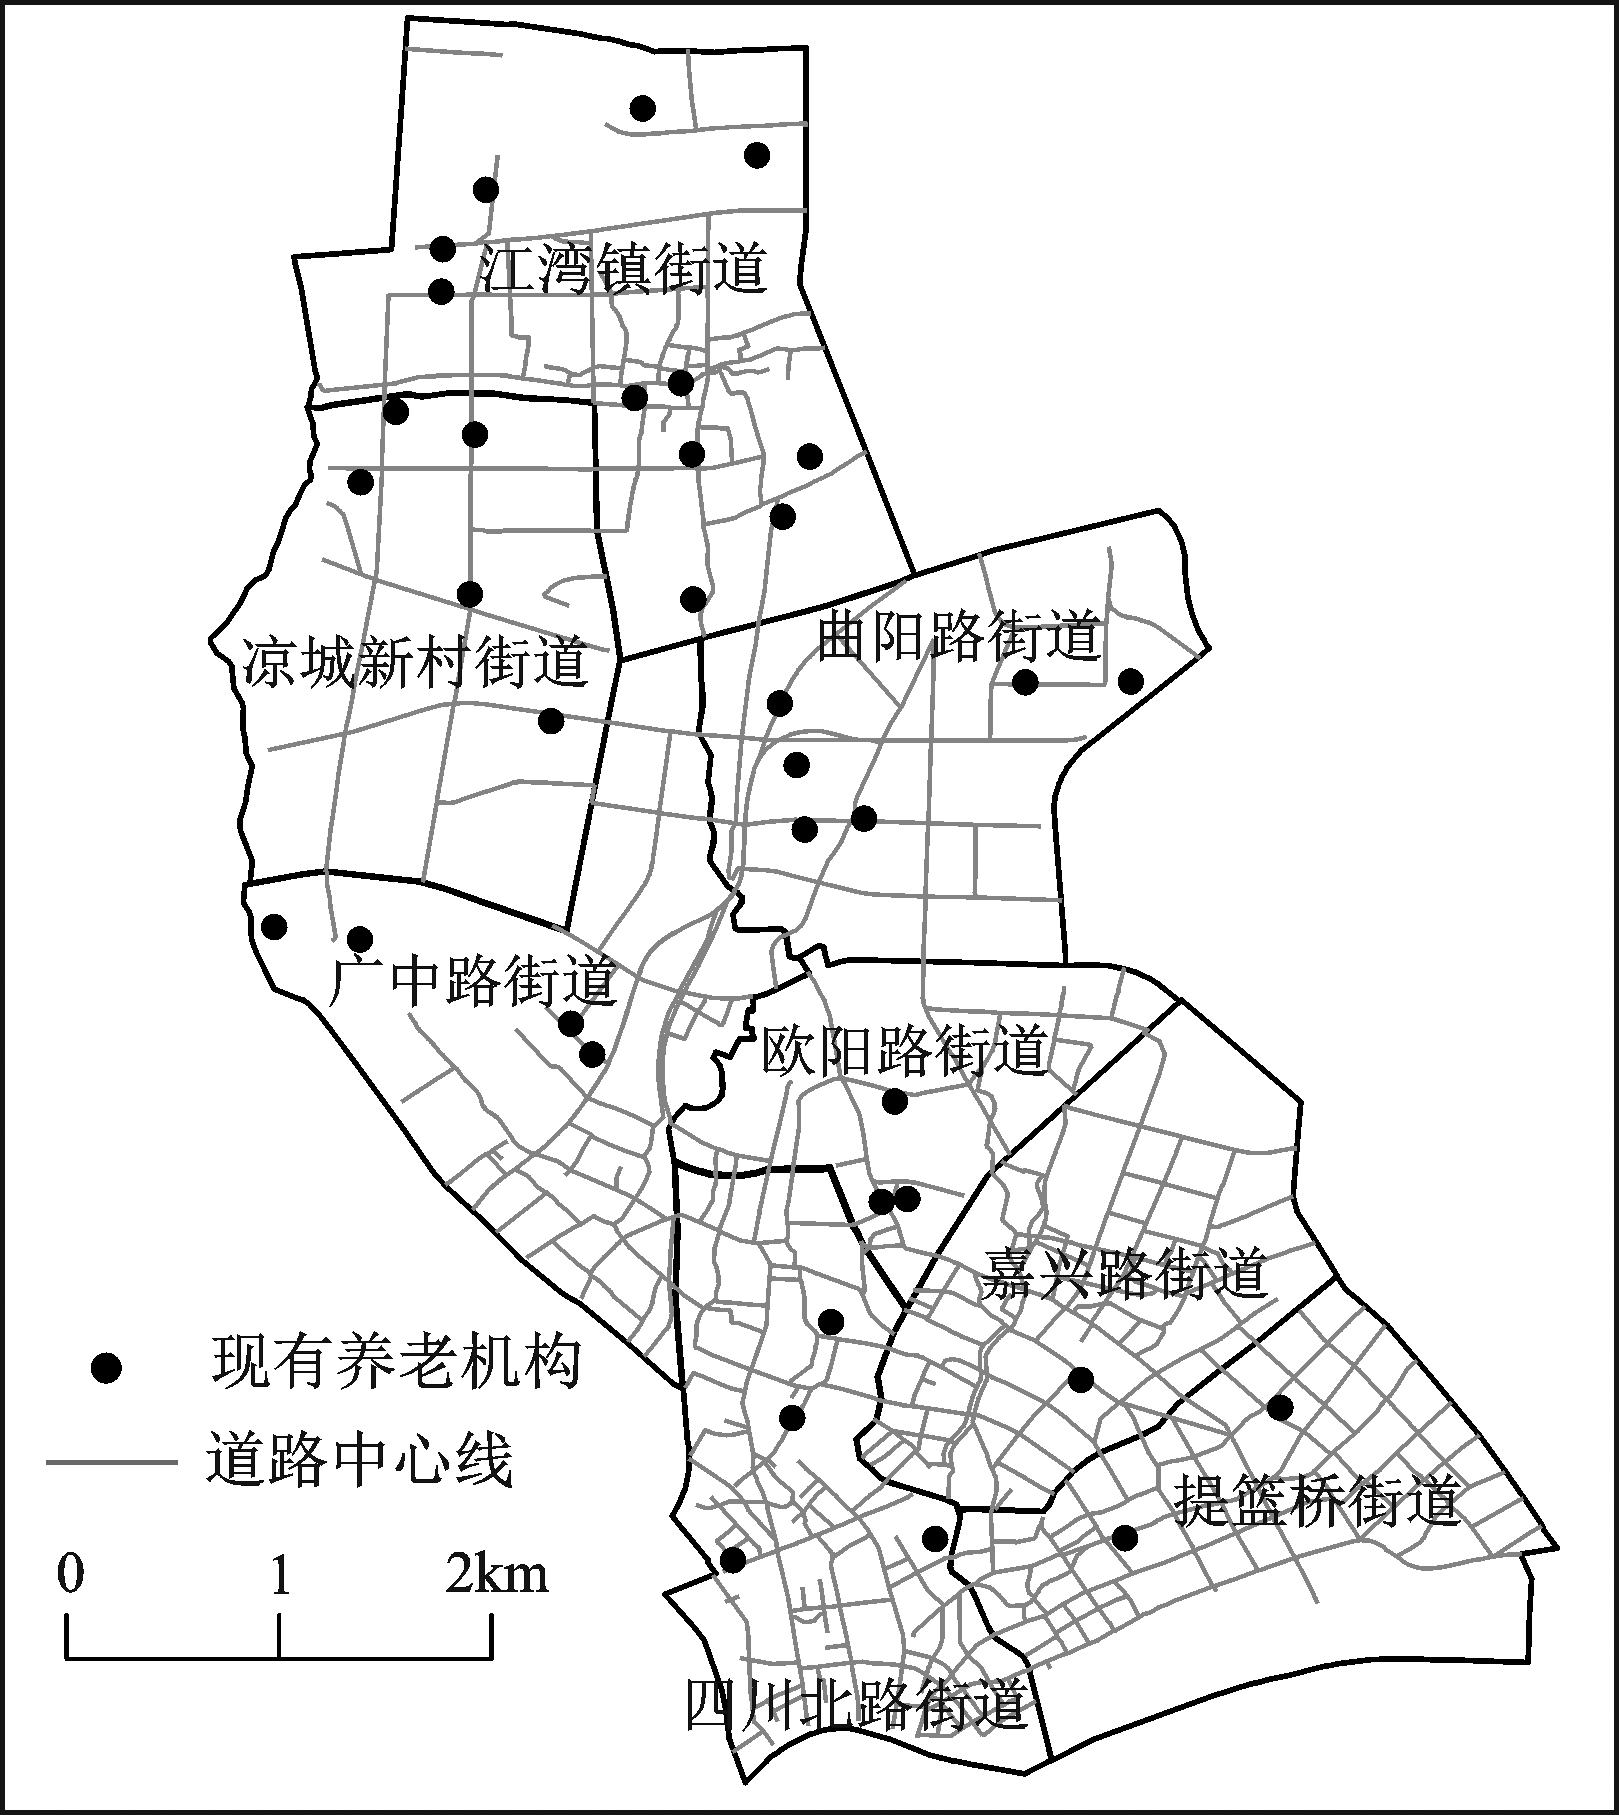 免疫算法和gis的养老机构空间配置优化研究——以上海市虹口区为例